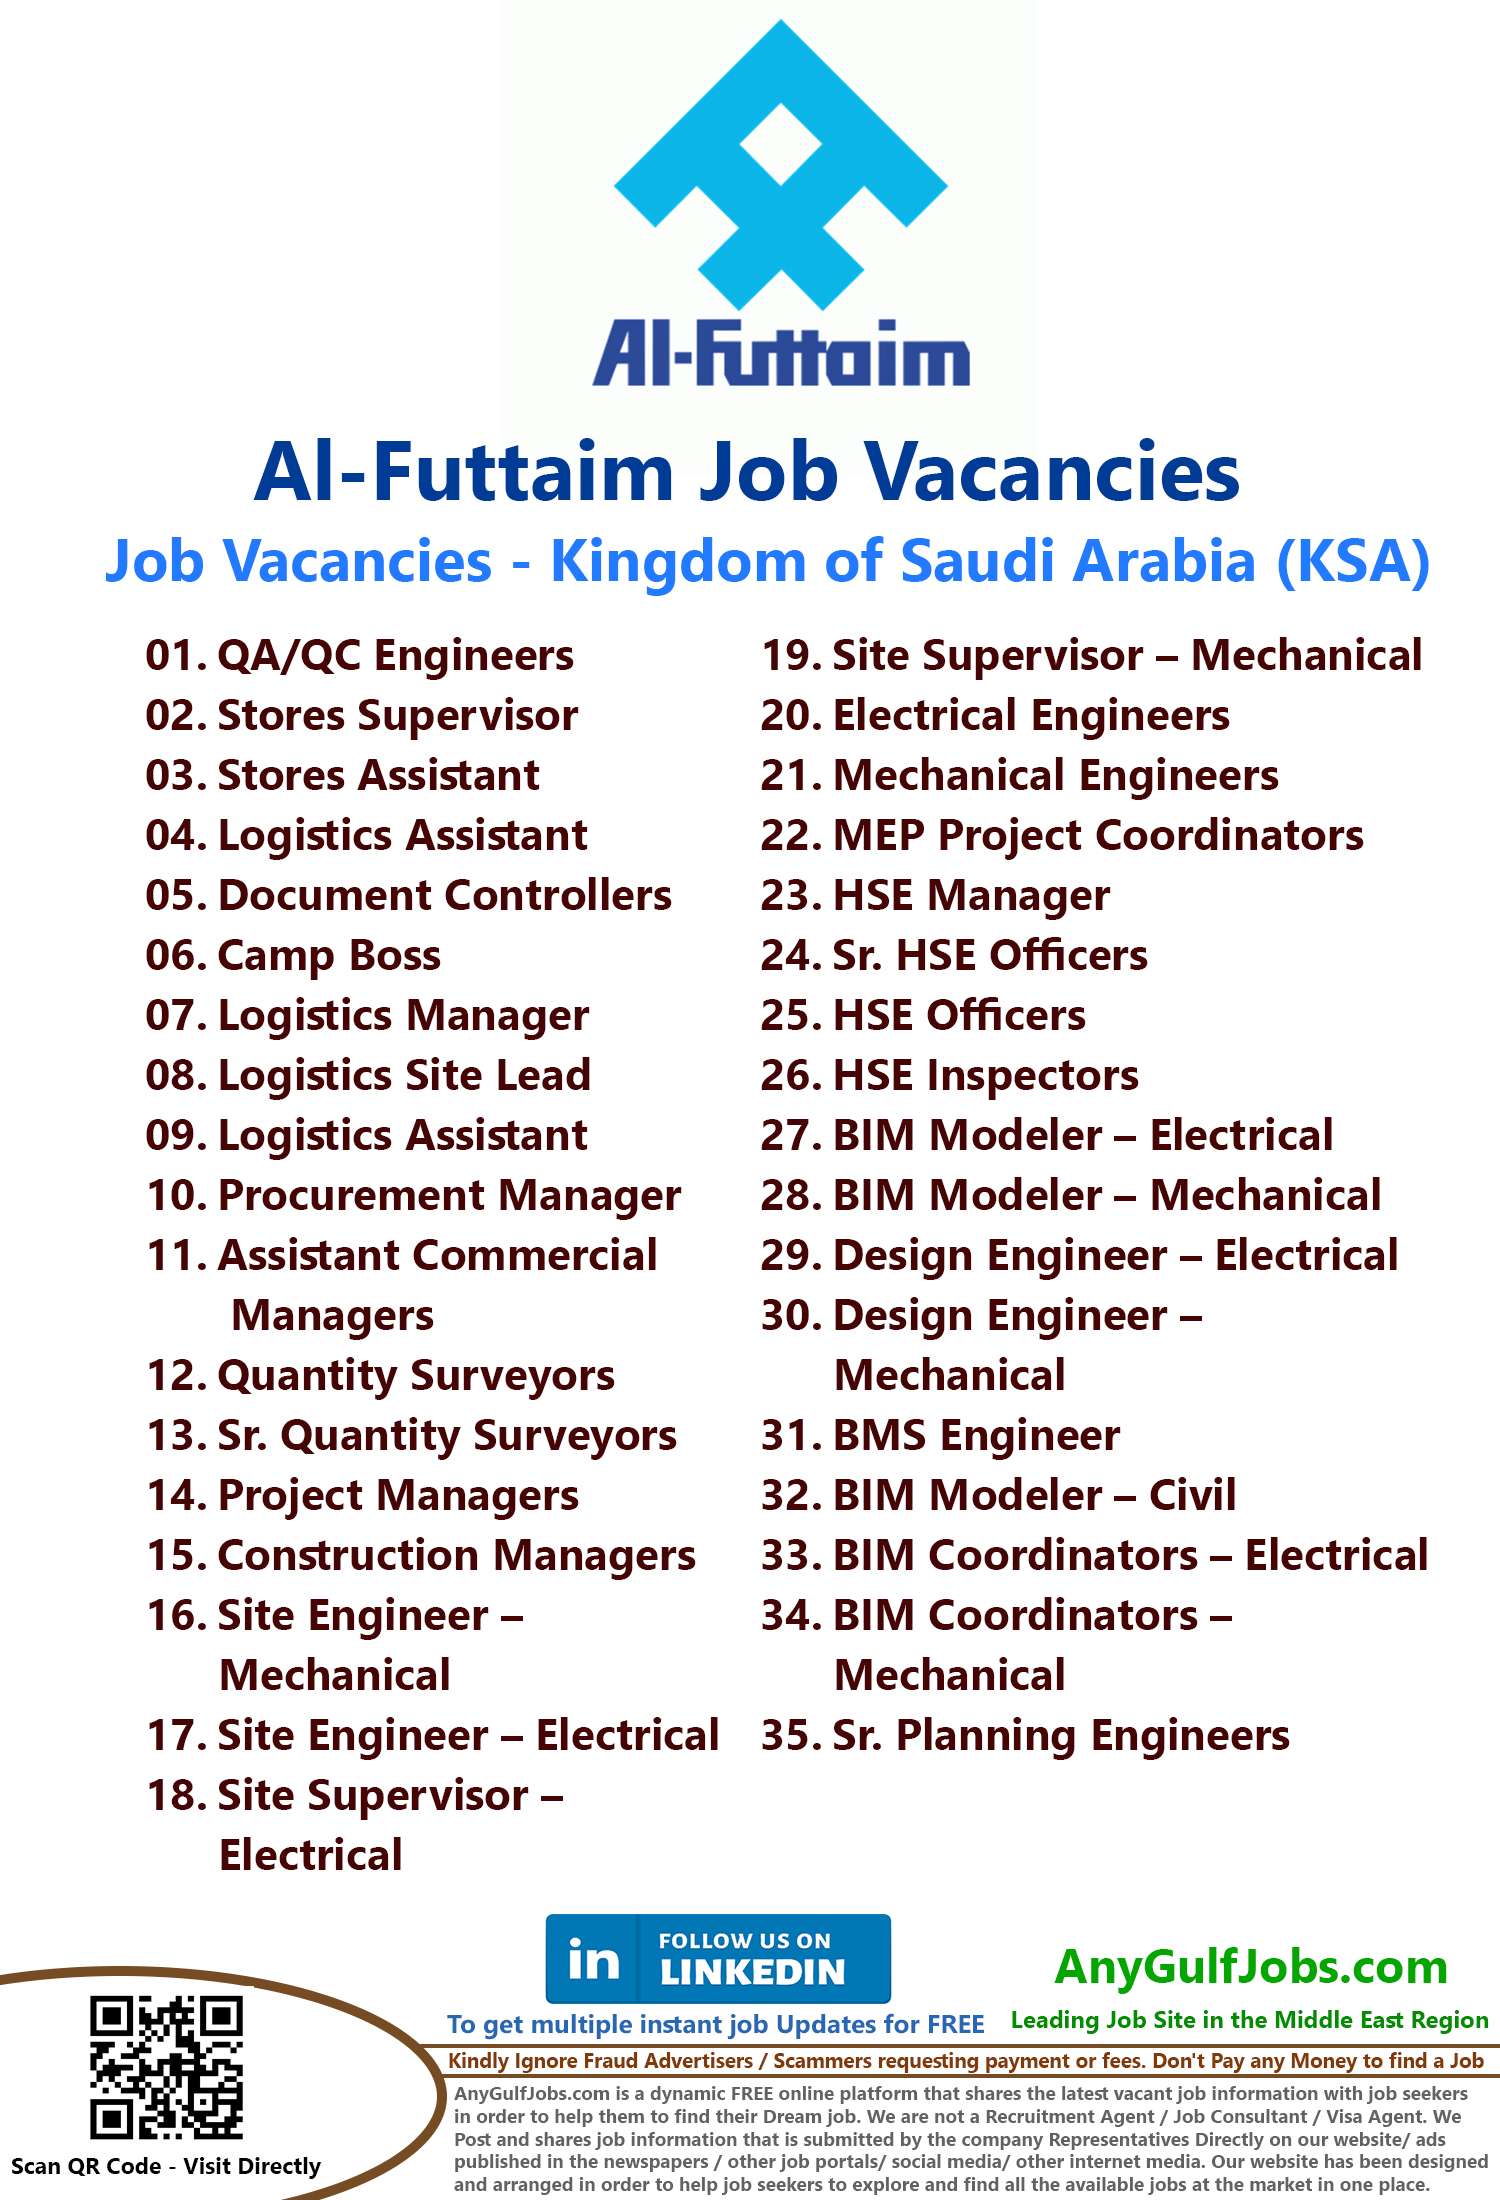 Al-Futtaim Job Vacancies - KSA